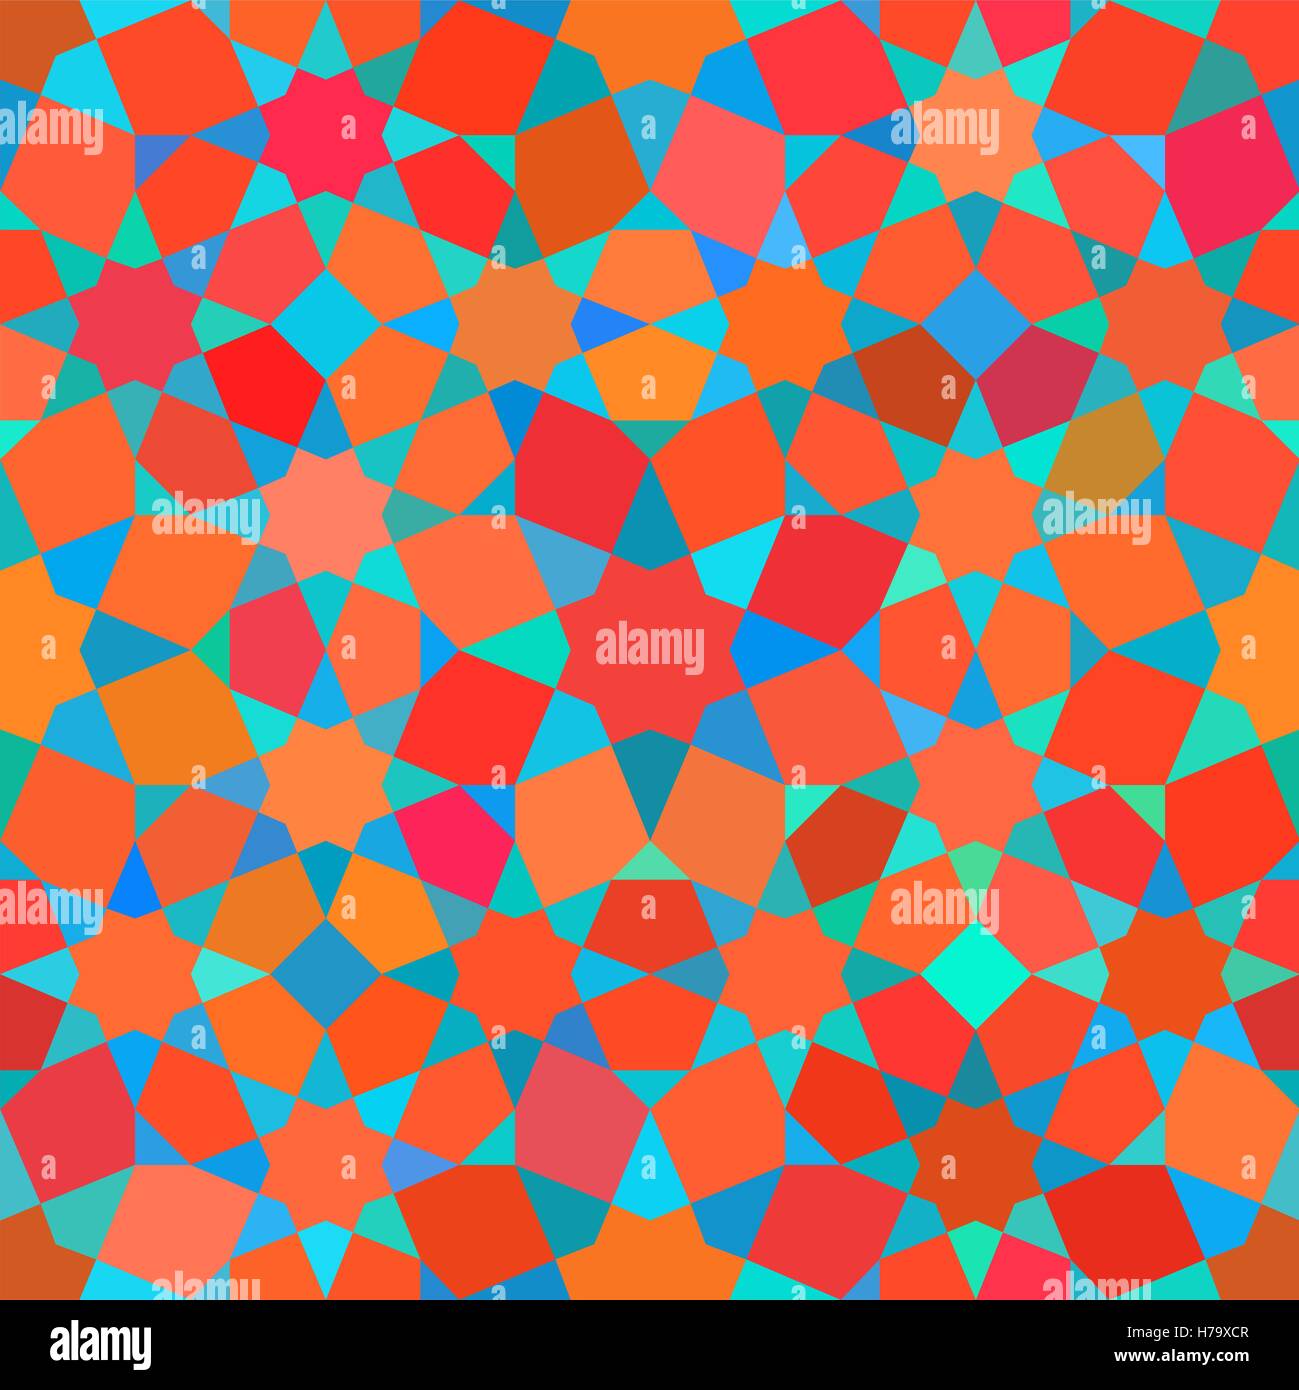 Vektor nahtlose Tessellation Sterne Mosaik rot blau schattiert geometrisches Muster Stock Vektor